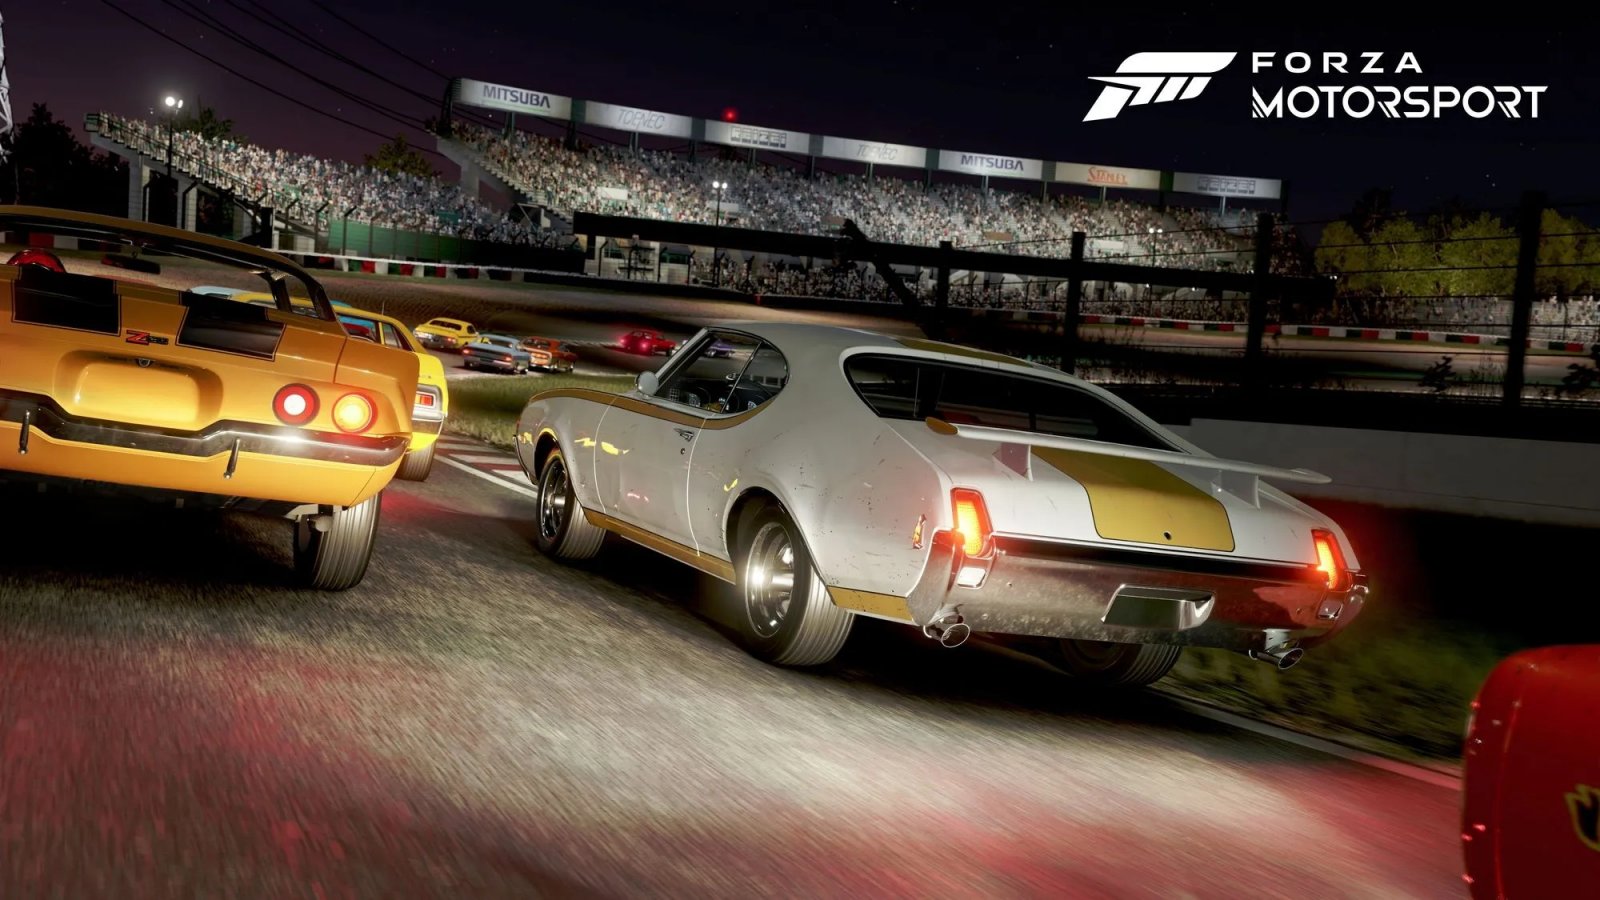 Forza Motorsport: un video gameplay della versione PC in 4K e dettagli al massimo